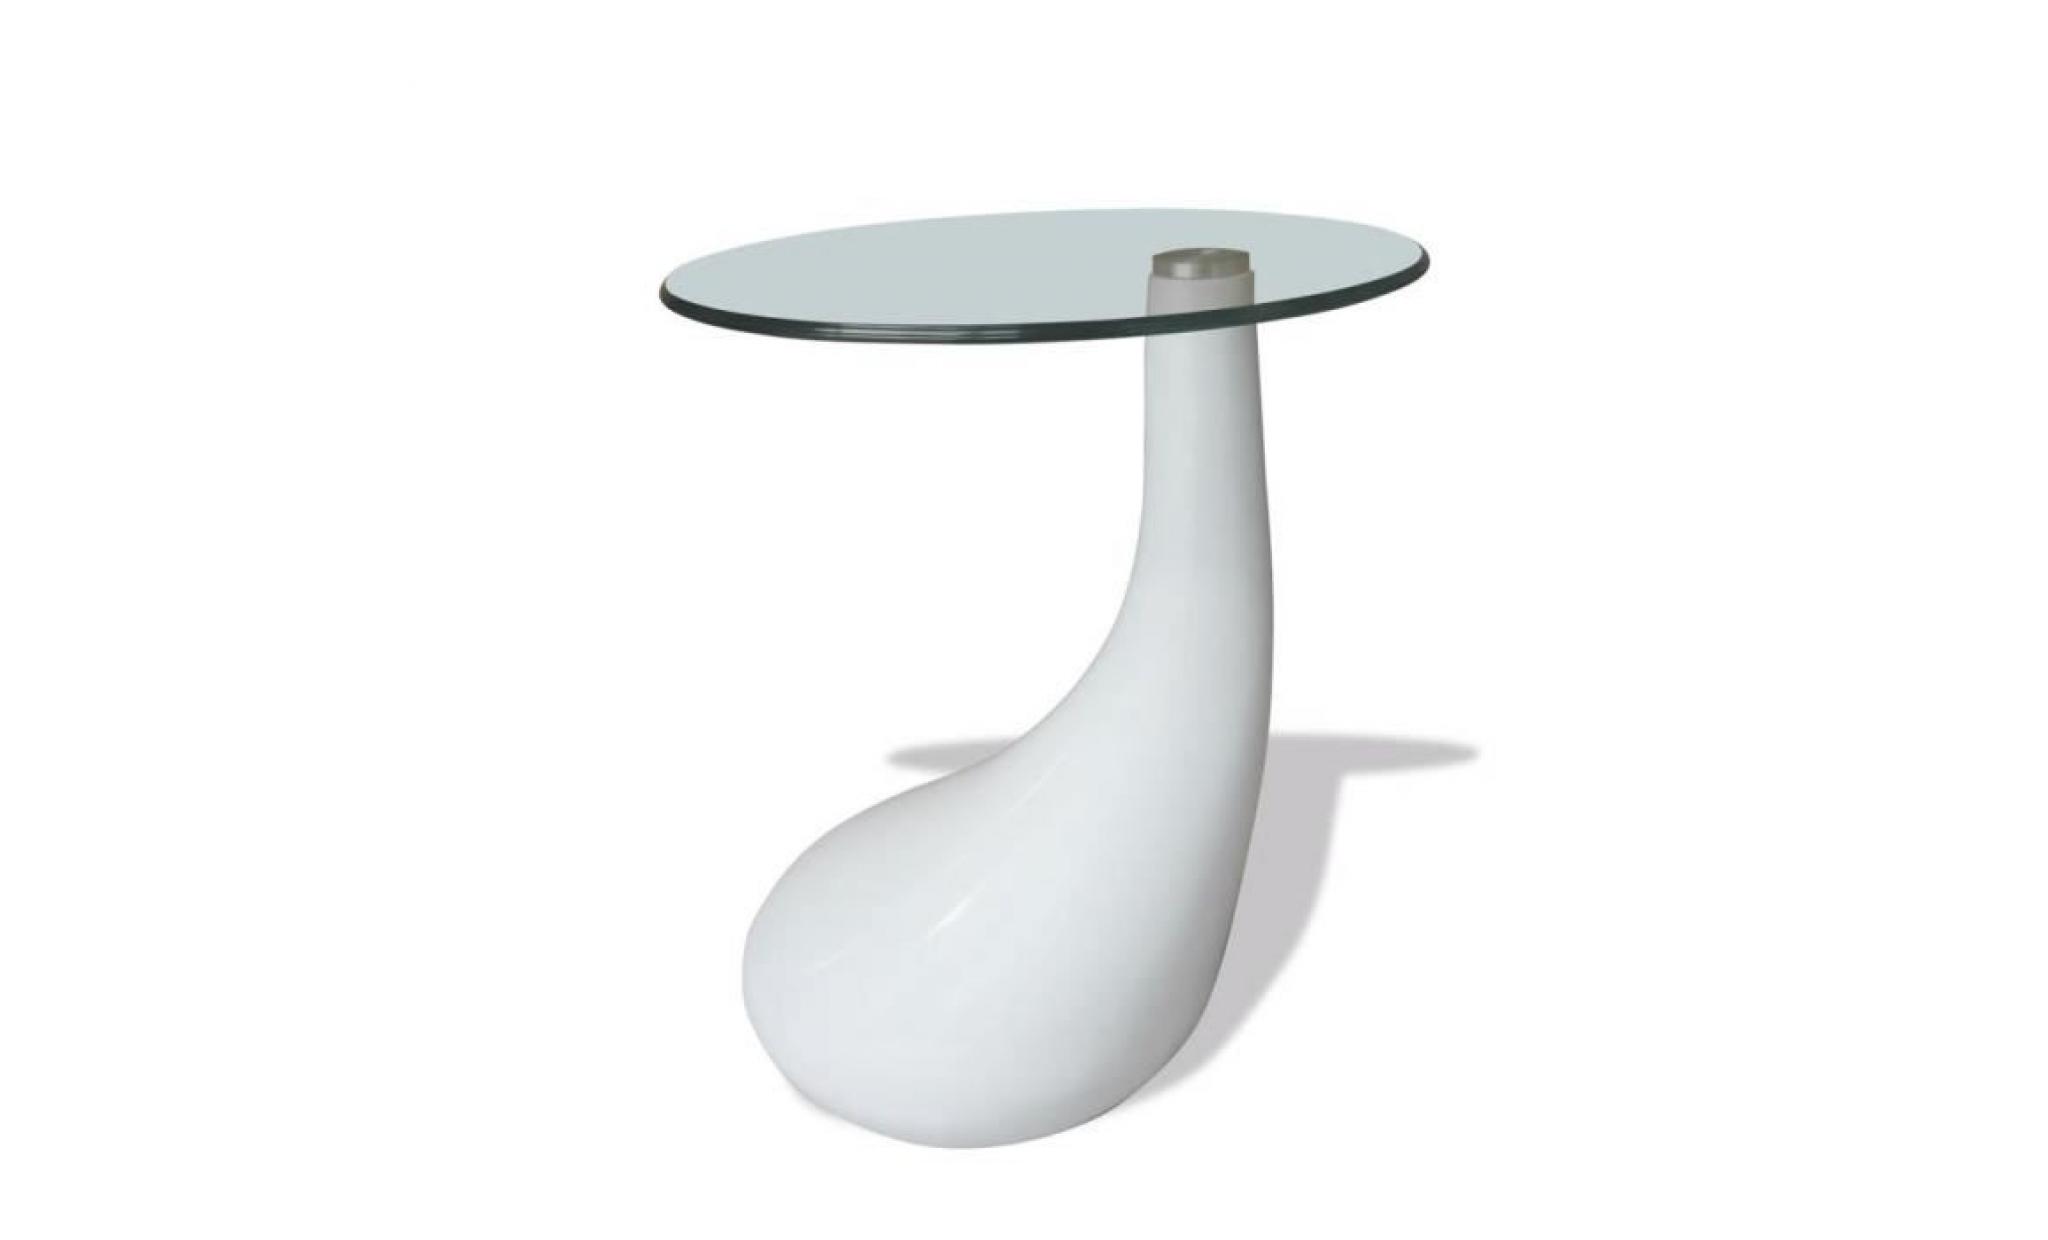 table basse avec dessus de table en verre rond blanc brillant table basse scandinave table bass style contemporain pas cher